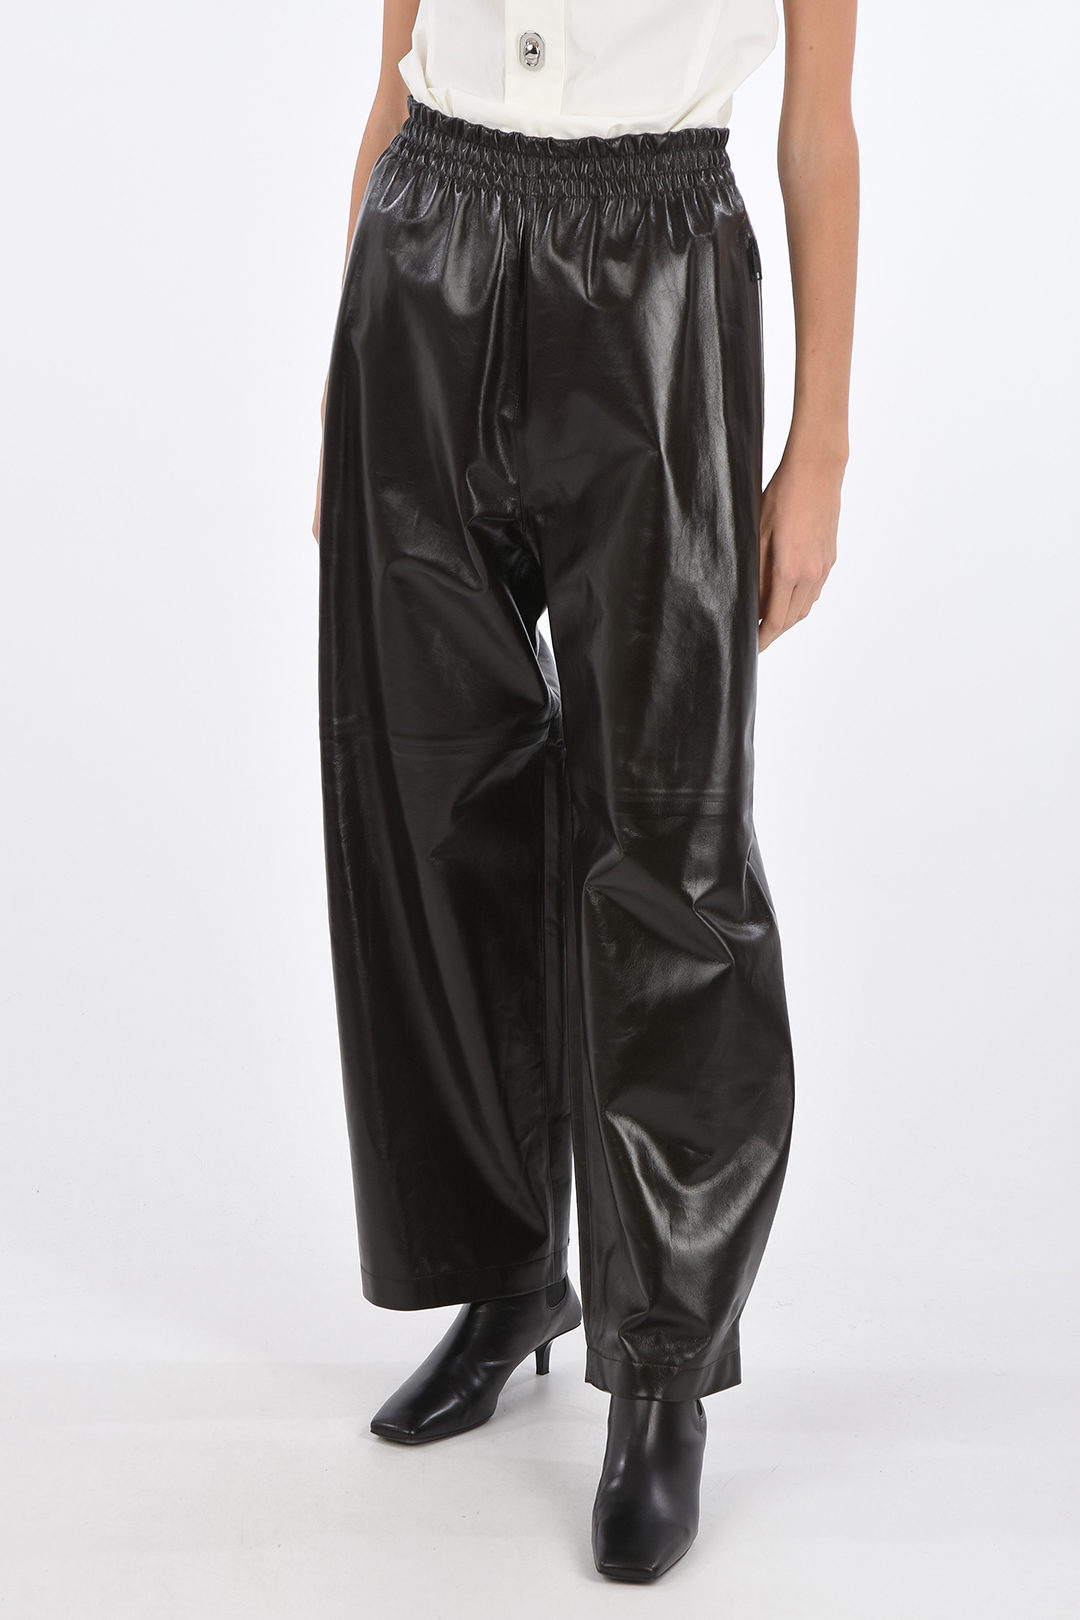 Bottega Veneta Shiny Leather Pants with Waistband and Ankle Velcro